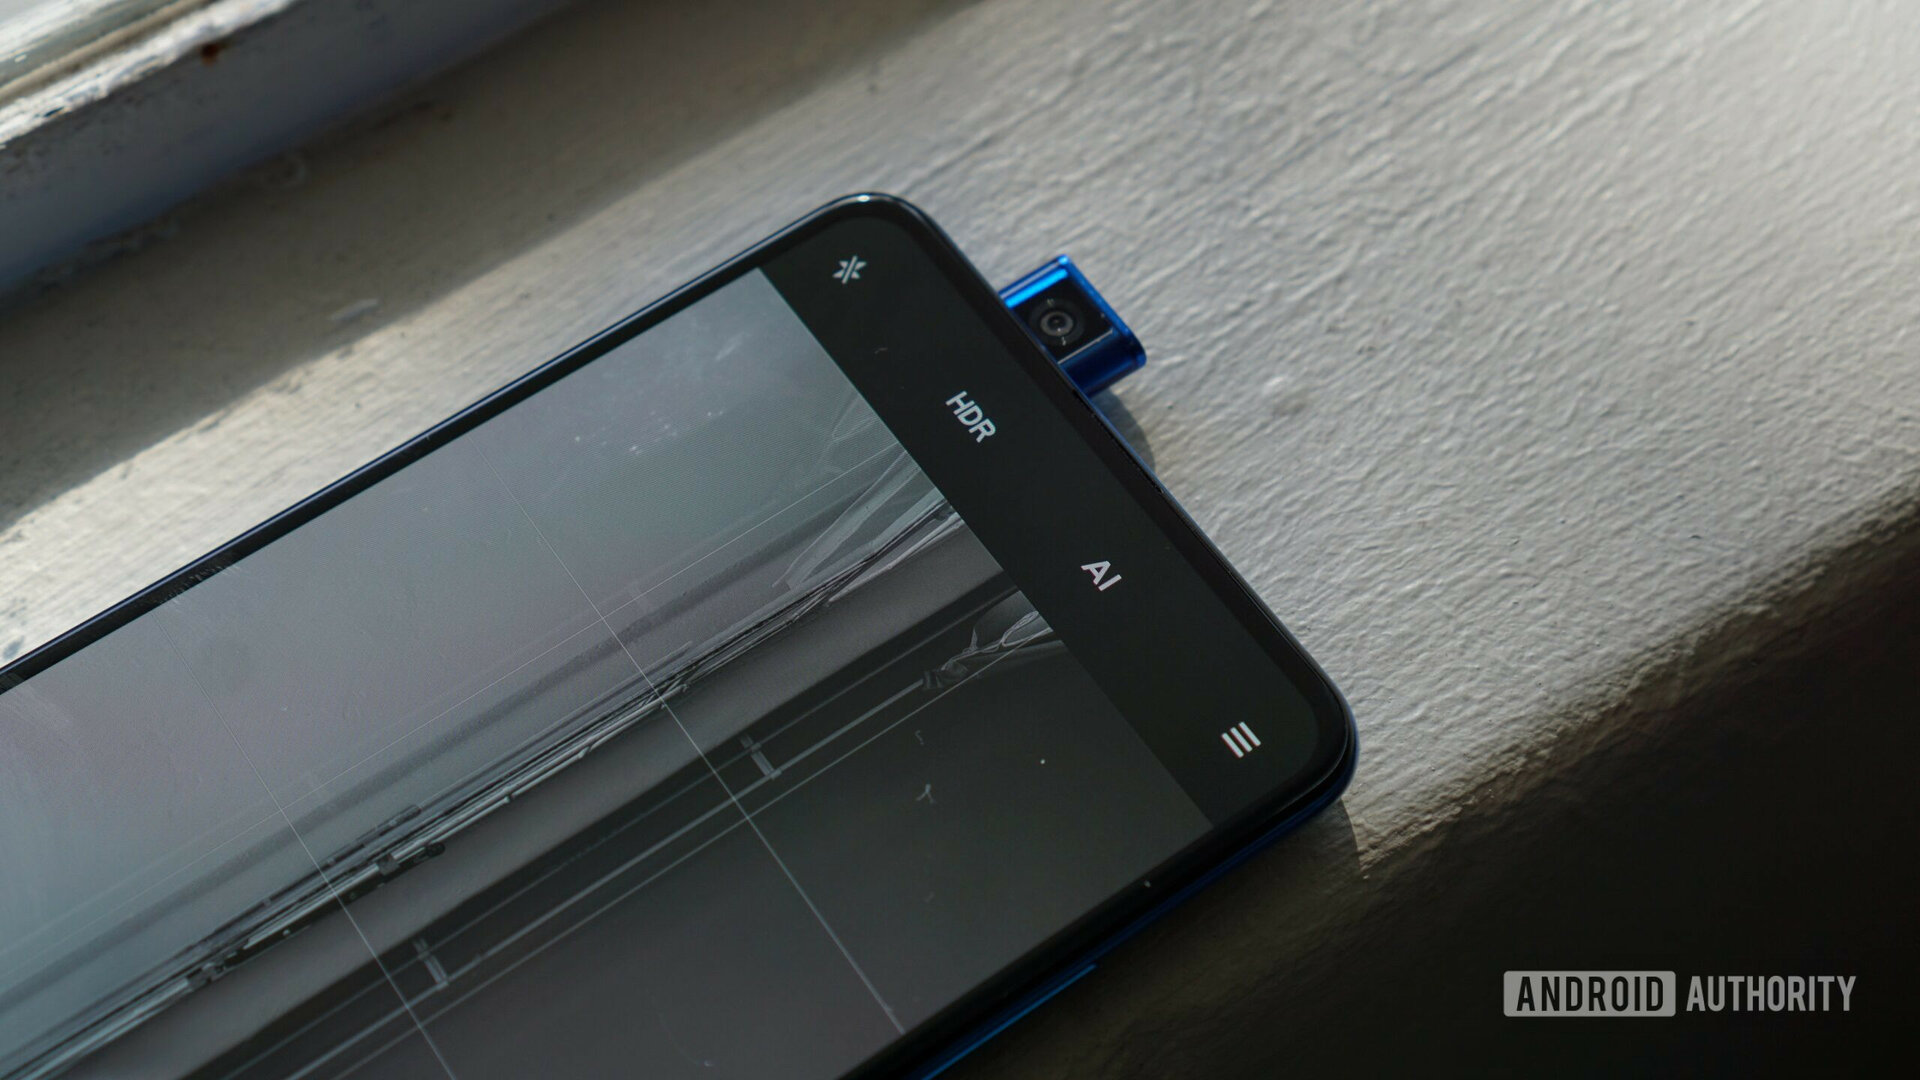 Xiaomi Mi 9T Pro pop up camera on window sill